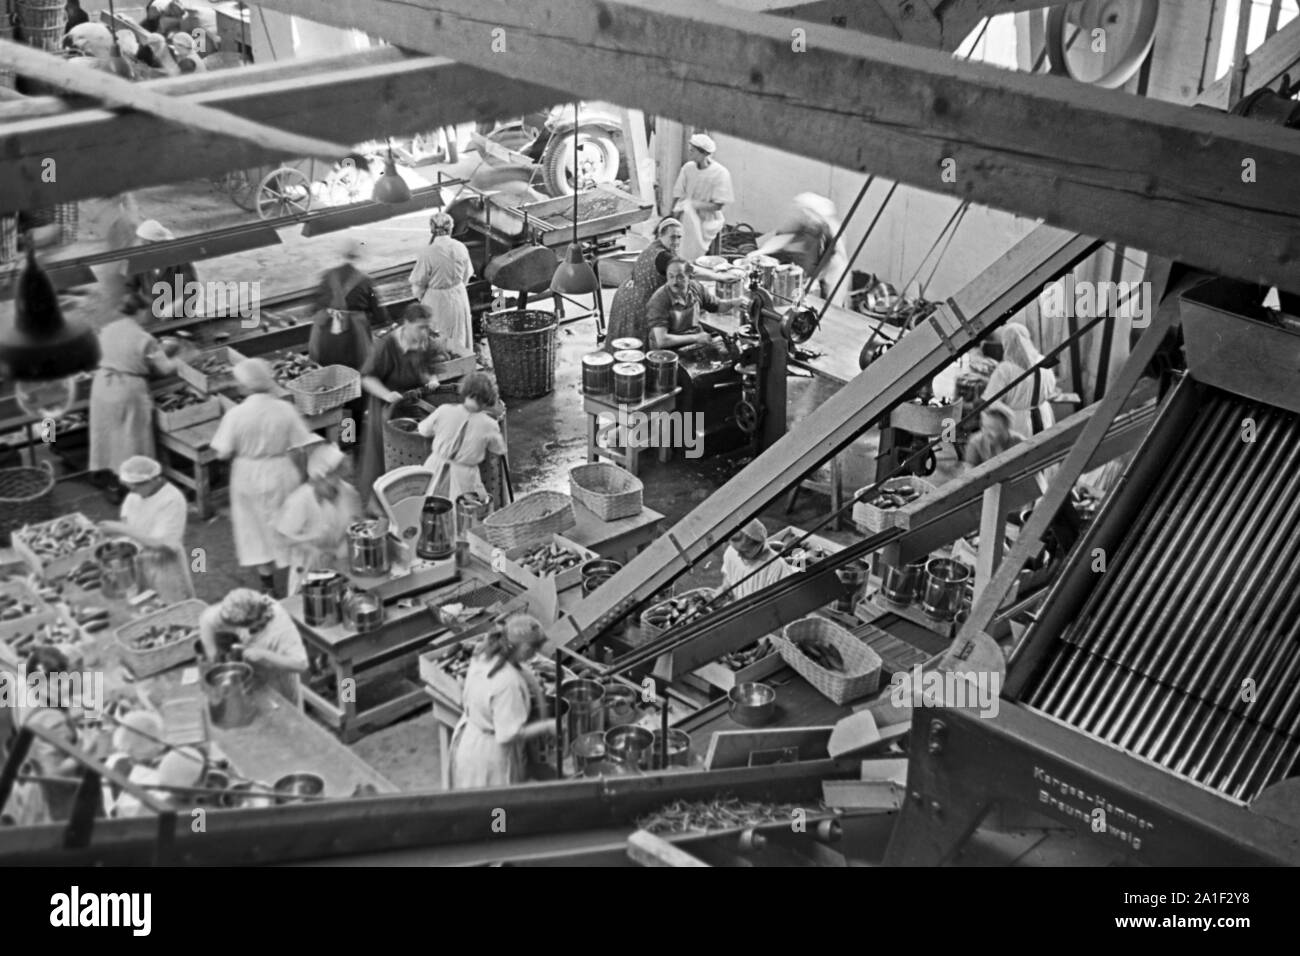 Werkshalle der Konservenfabrik C. Th. Lampe in Braunschweig, Deutschland  1939. Workshop of the canning factory C. Th. Lampe in Brunswick, Germany  1939 Stock Photo - Alamy